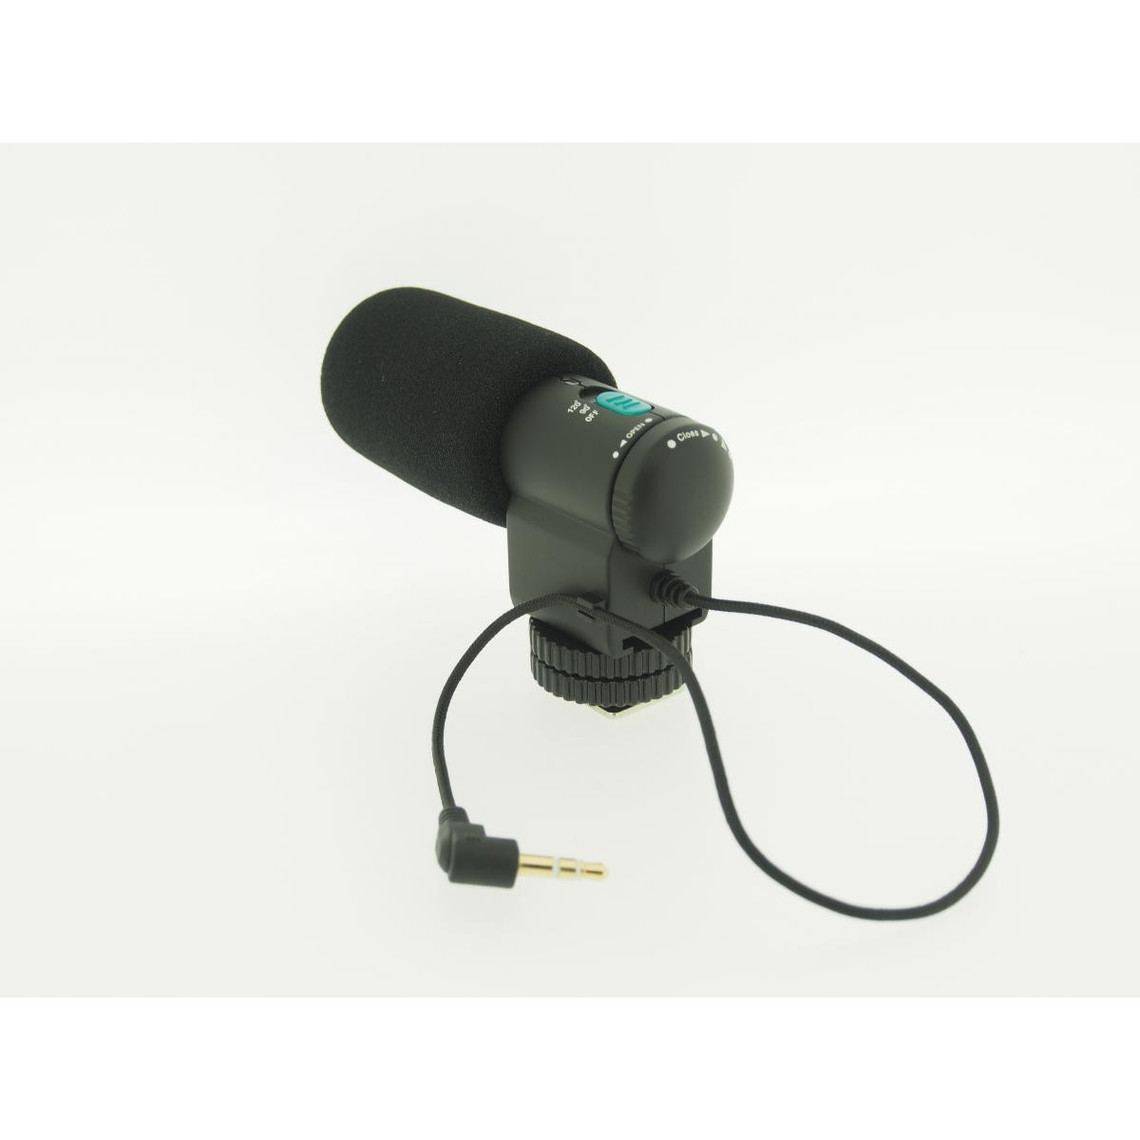 Tous nos autres accessoires Vhbw vhbw Microphone externe stéréo compatible avec Sony Alpha SLT-A55, SLT-A55V, SLT-A55VL, SLT-A55VY, SLT-A65VY